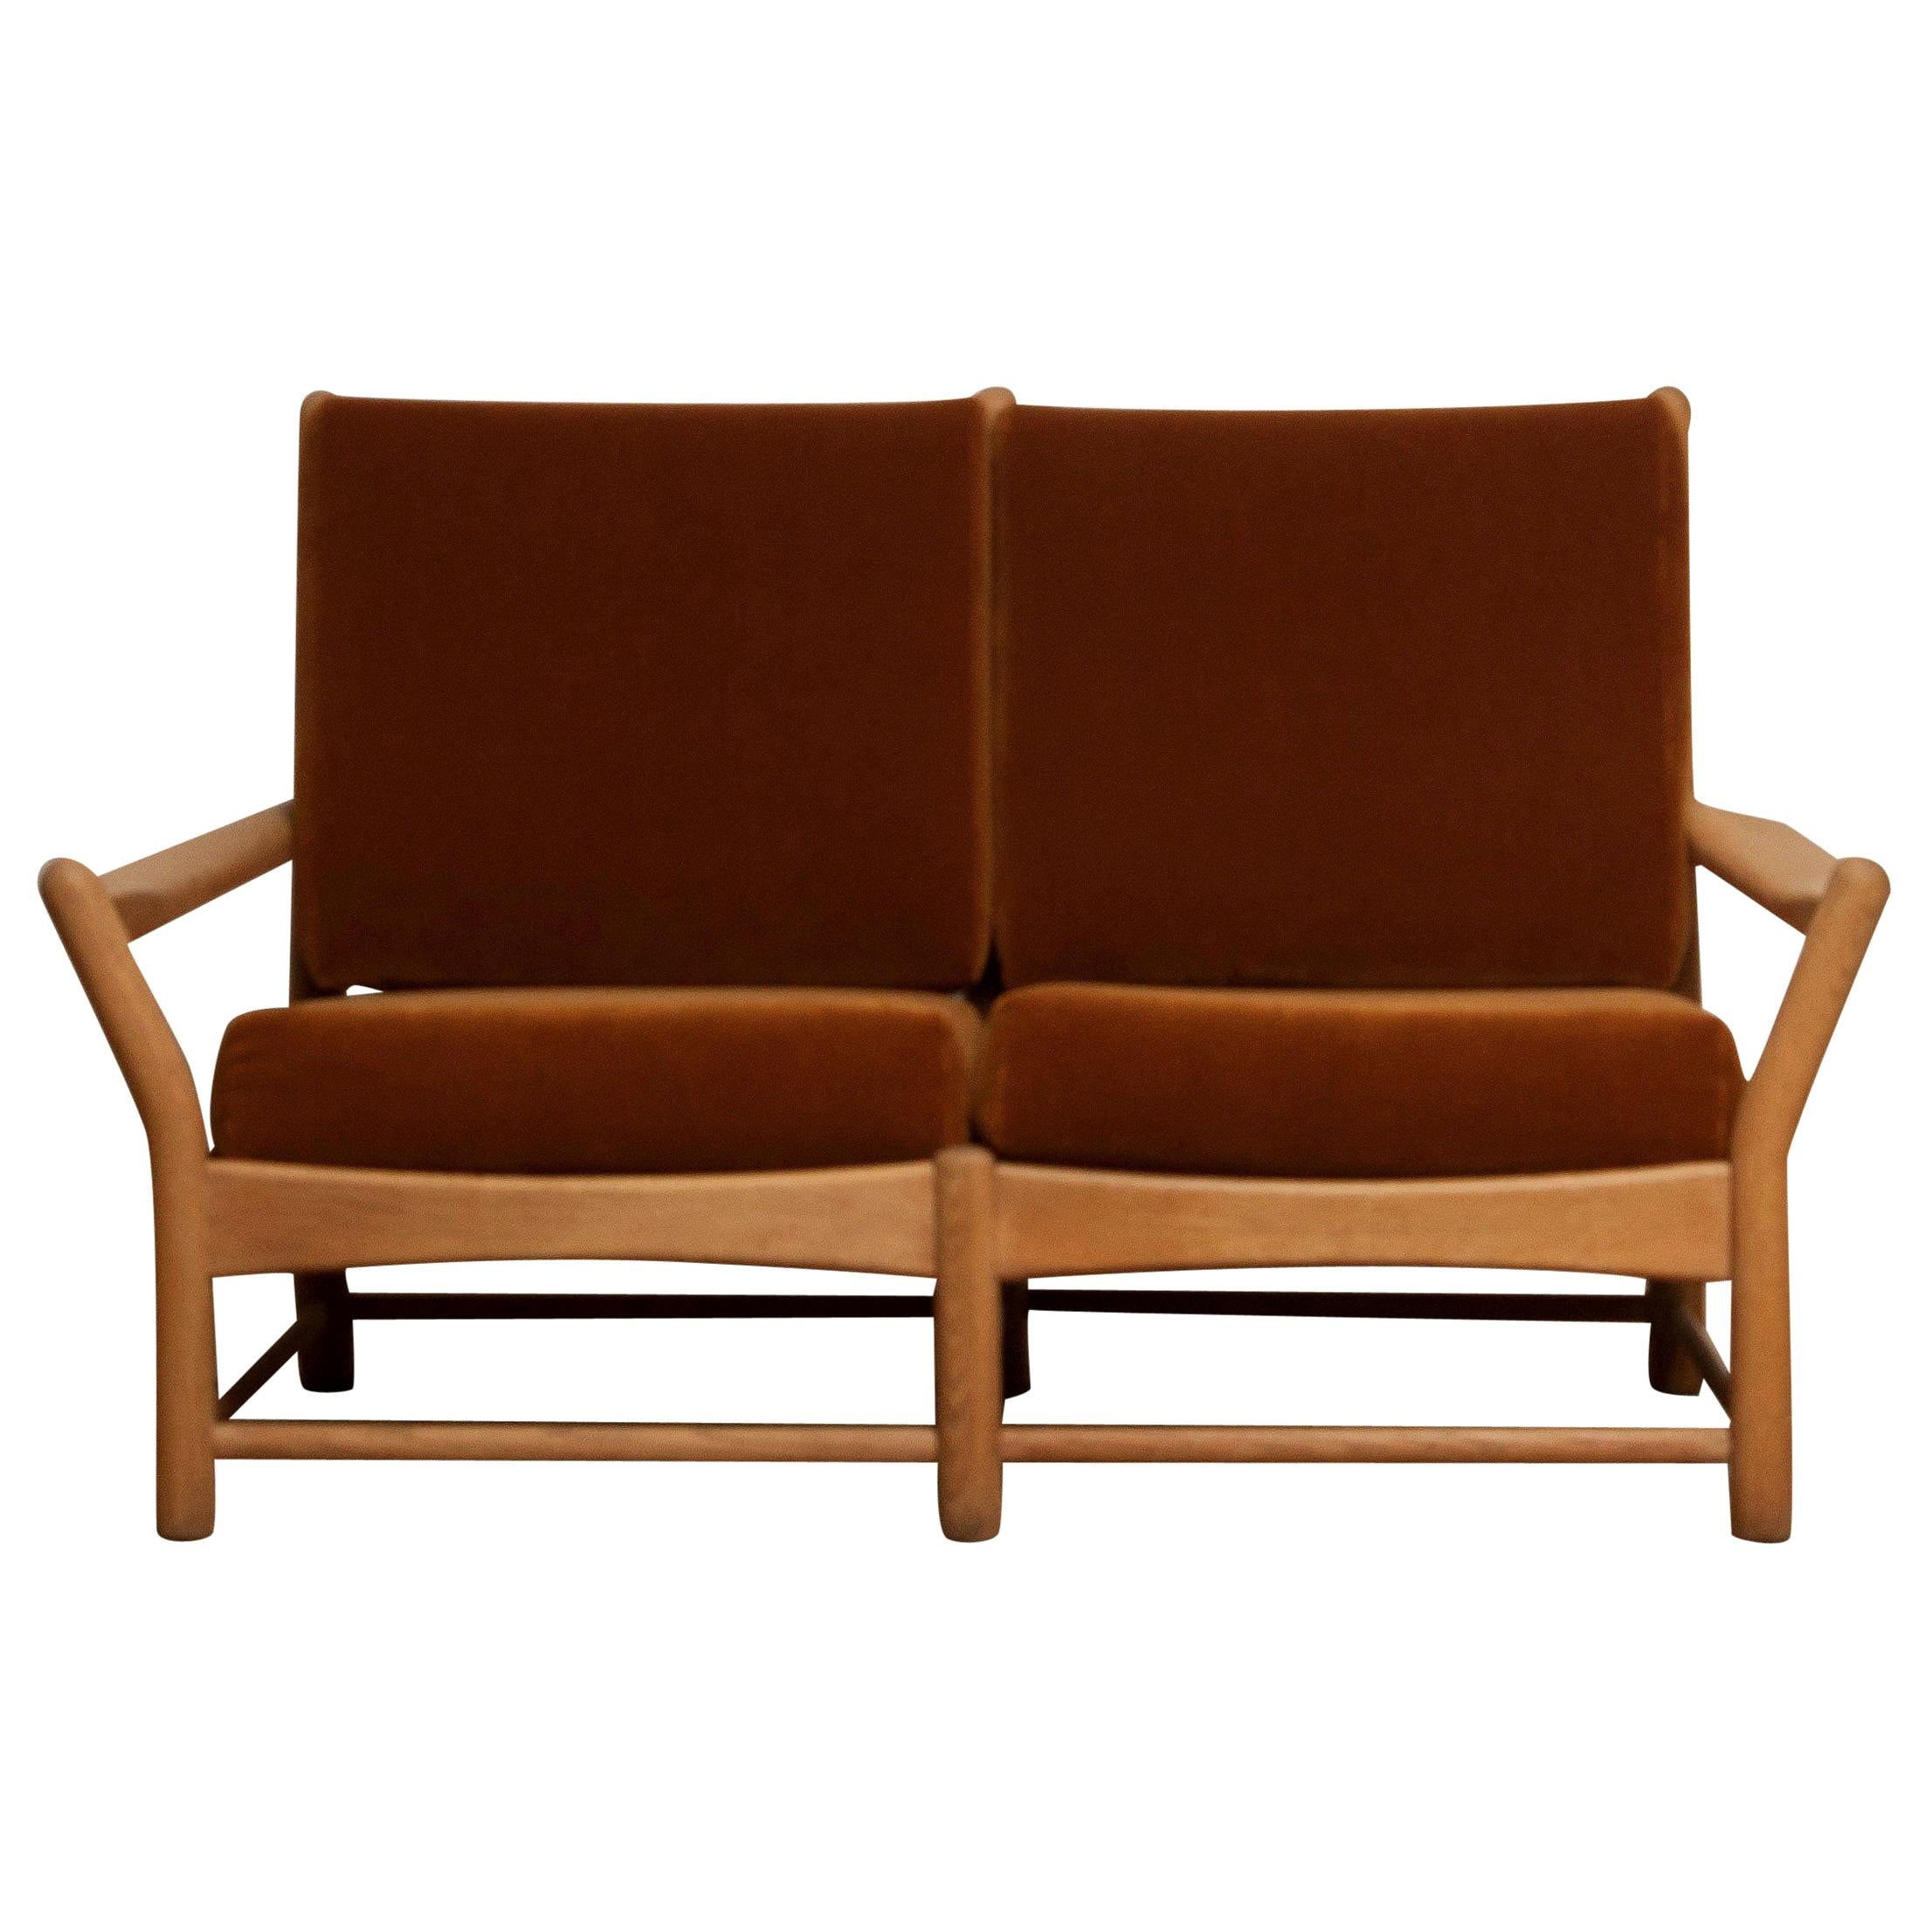 Schönes zweisitziges Sofa aus Dänemark.
Dieses Sofa ist aus Eichenholz gefertigt und mit braunen Samtkissen ausgestattet.
Es ist in einem sehr guten Zustand.
Zeitraum: 1950s.

Bitte beachten Sie!
Da die Versandkosten täglich stark schwanken, bitten